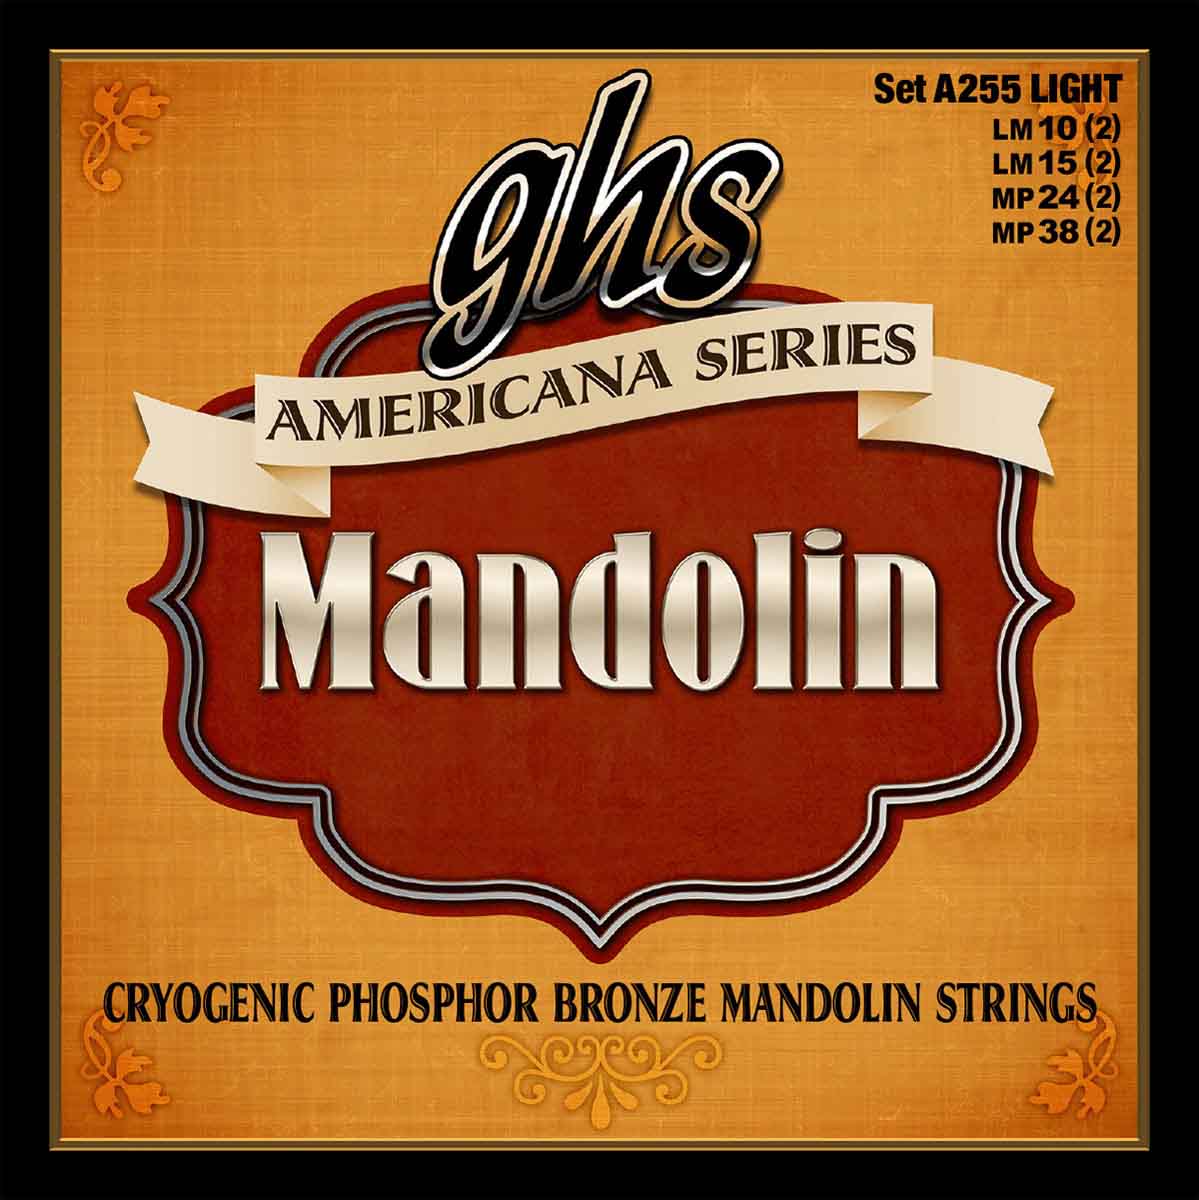 GHS MANDOLIN AMERICANA LIGHT 10-15-24-38